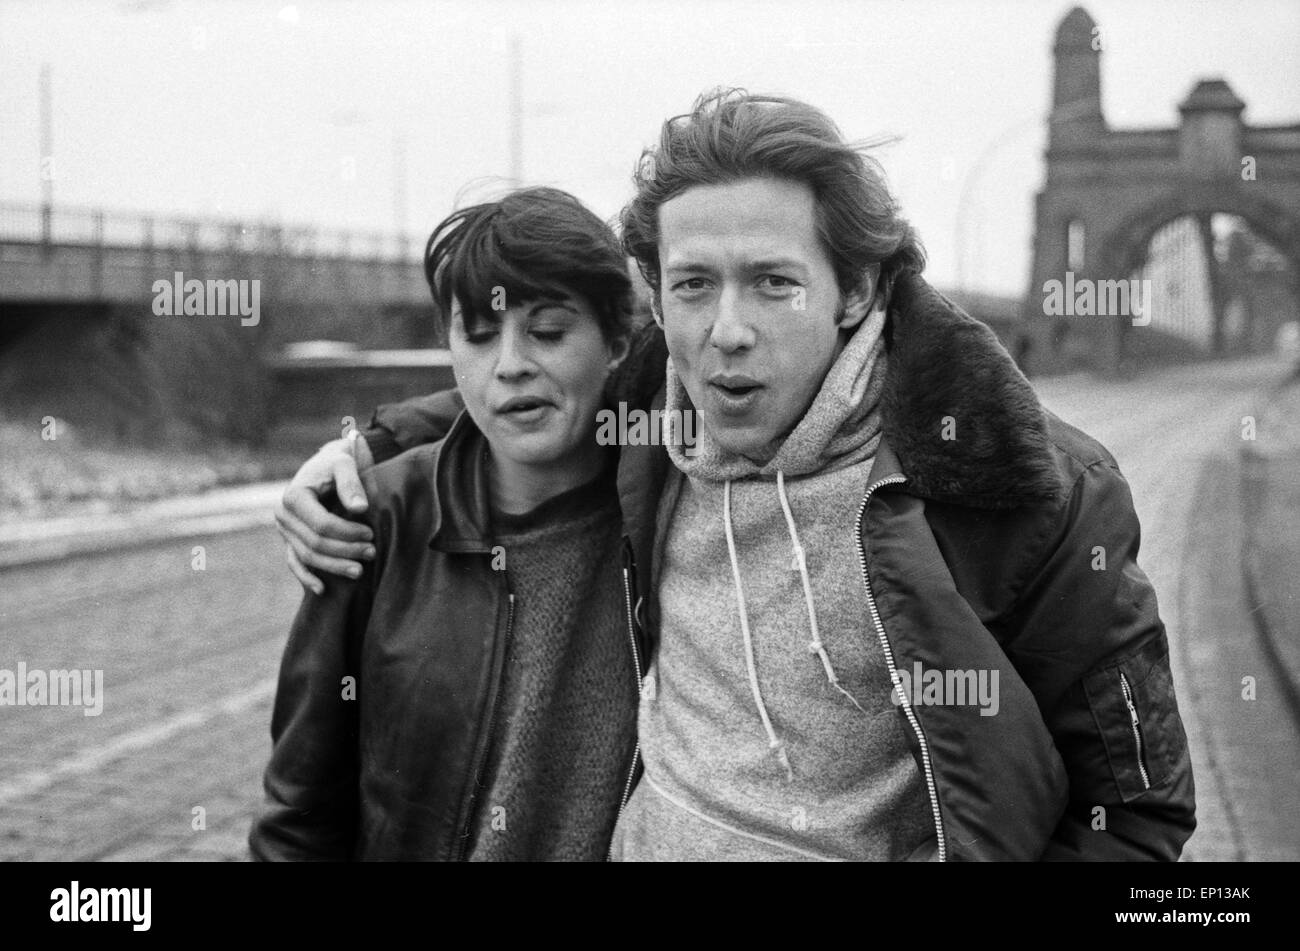 Das Ding, Fernsehserie, Fernsehspiel, Zweiteiler, Deutschland 1979, Regie: Ulrich Edel, Darsteller: Caroline Chaniolleau, Stepha Stock Photo